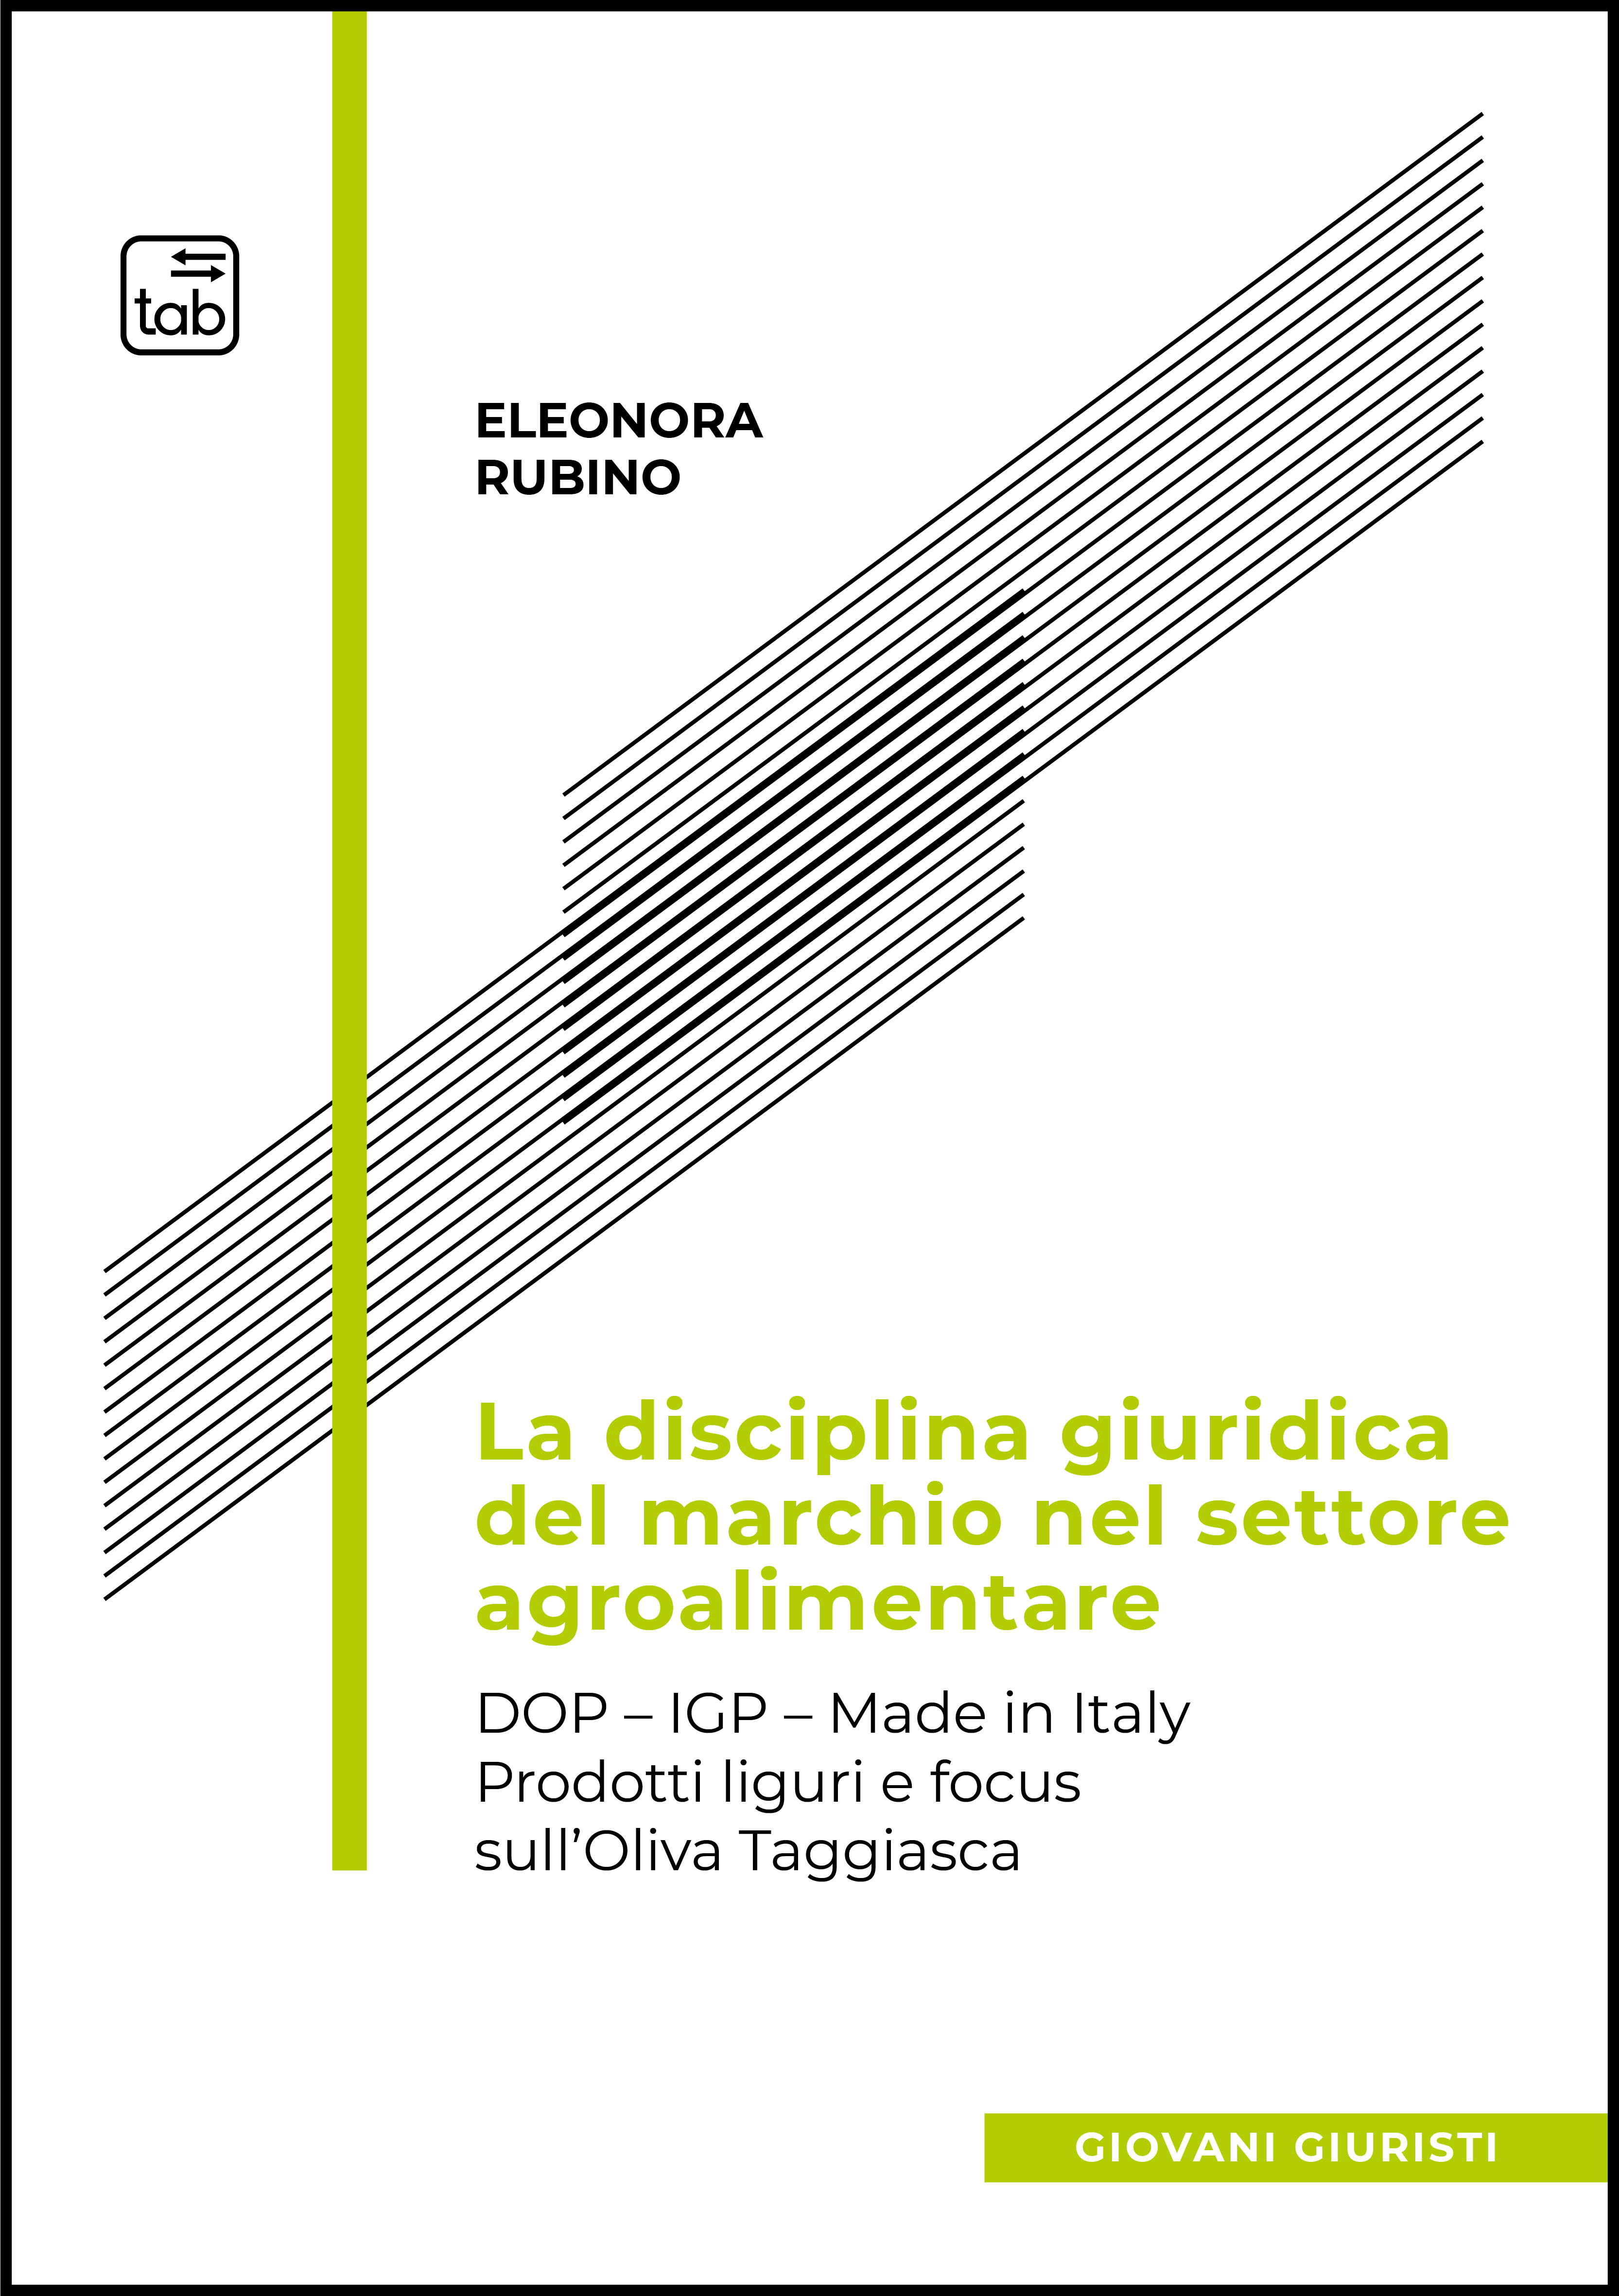 La disciplina giuridica del marchio nel settore agroalimentare